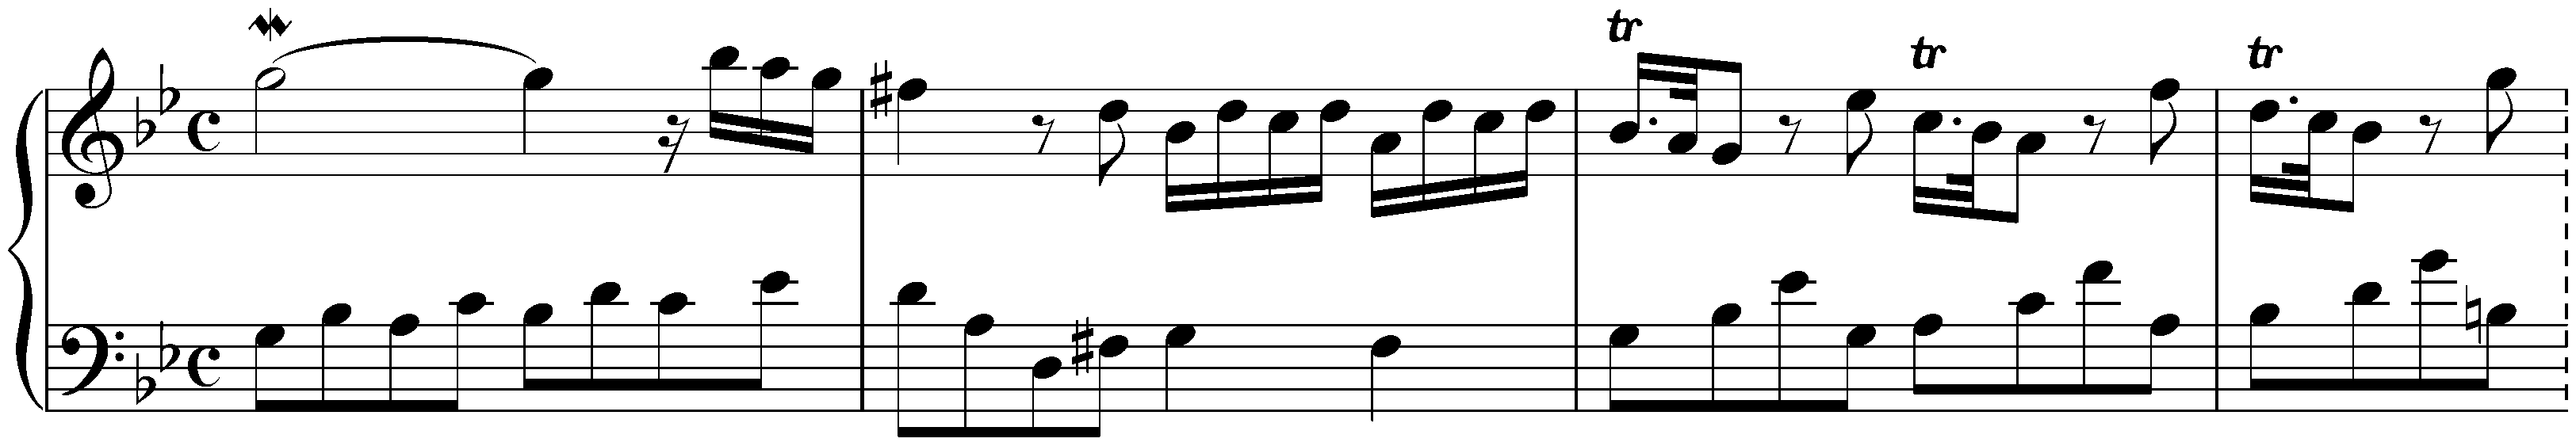 Toccata in G minor, HWV 586